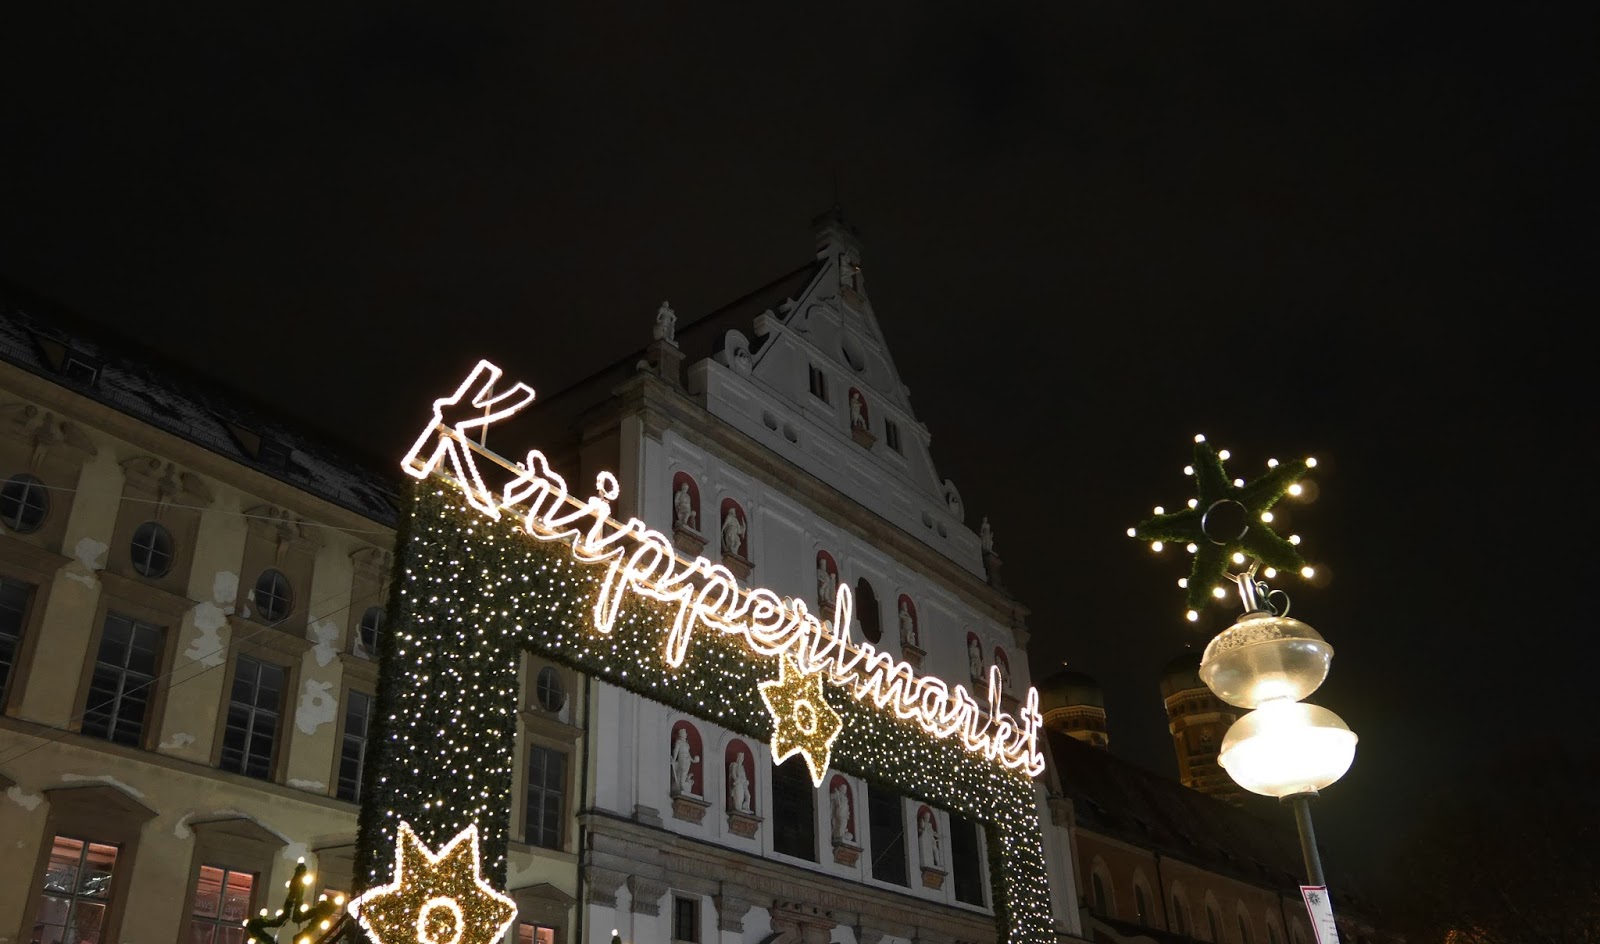 Munich Christmas Markets at night